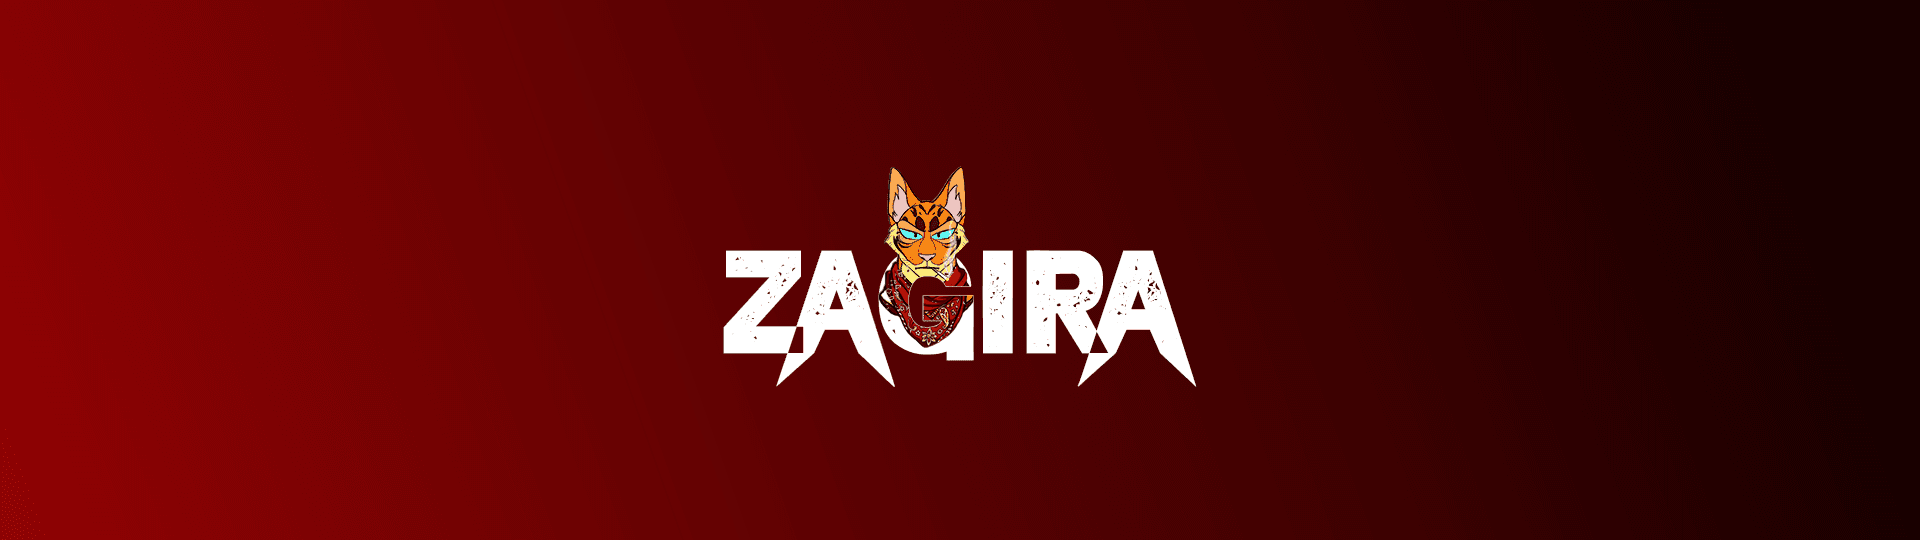 ZAGIRA banner